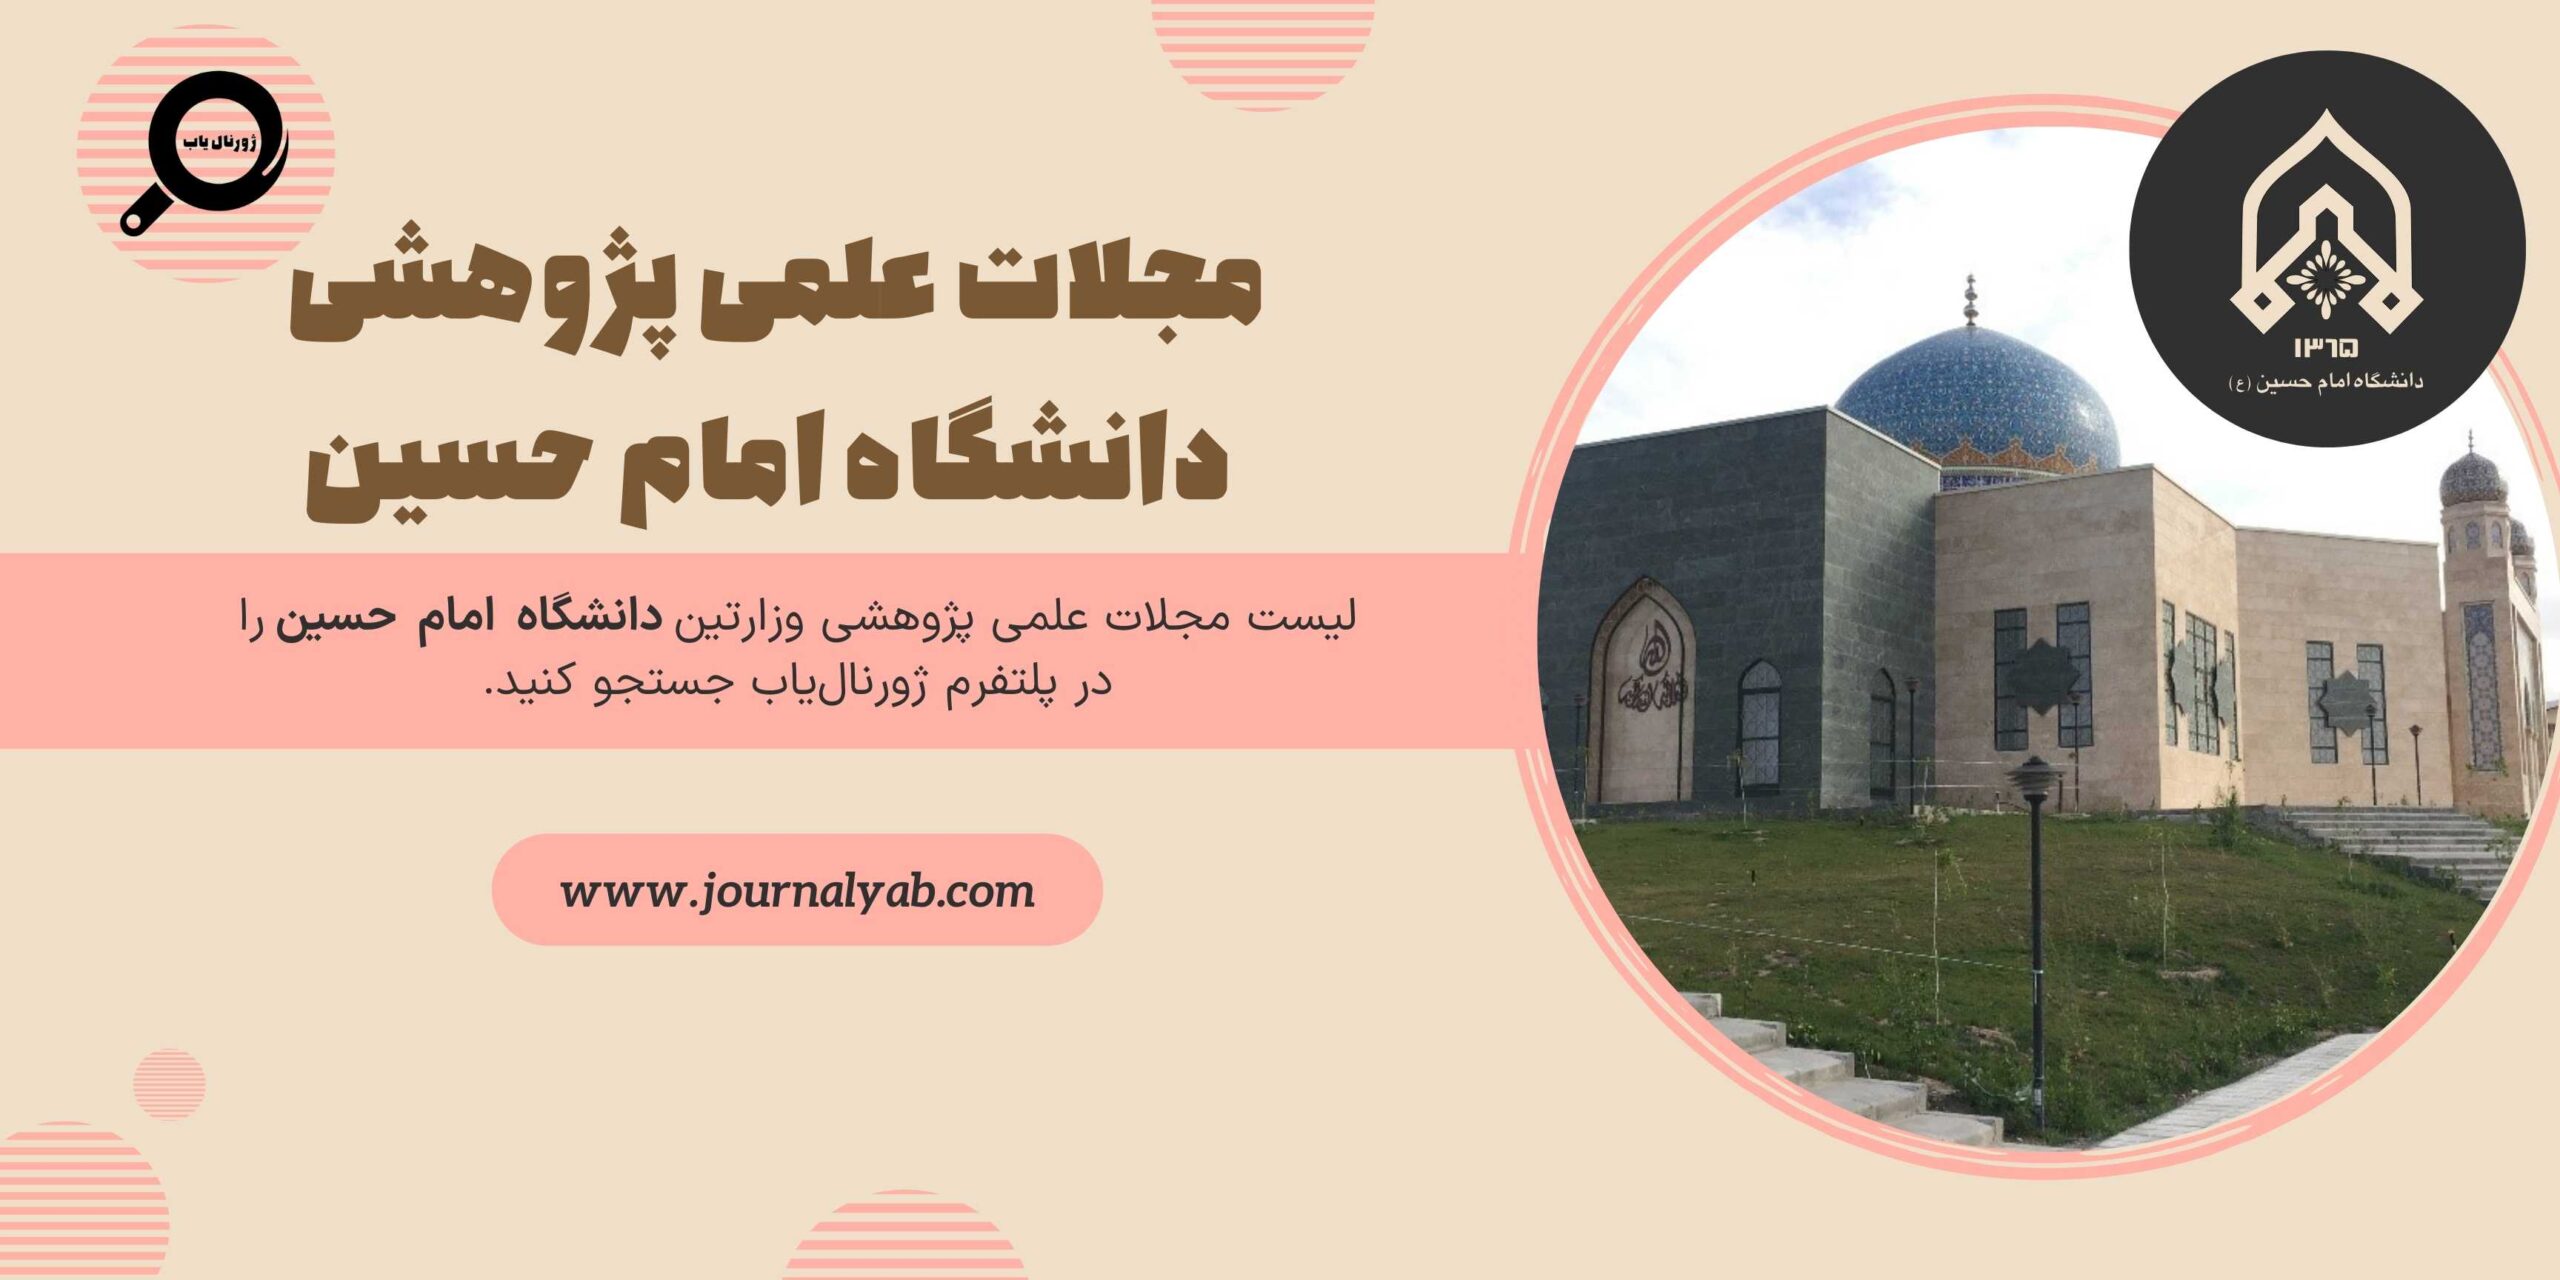 لیست مجلات دانشگاه امام حسین